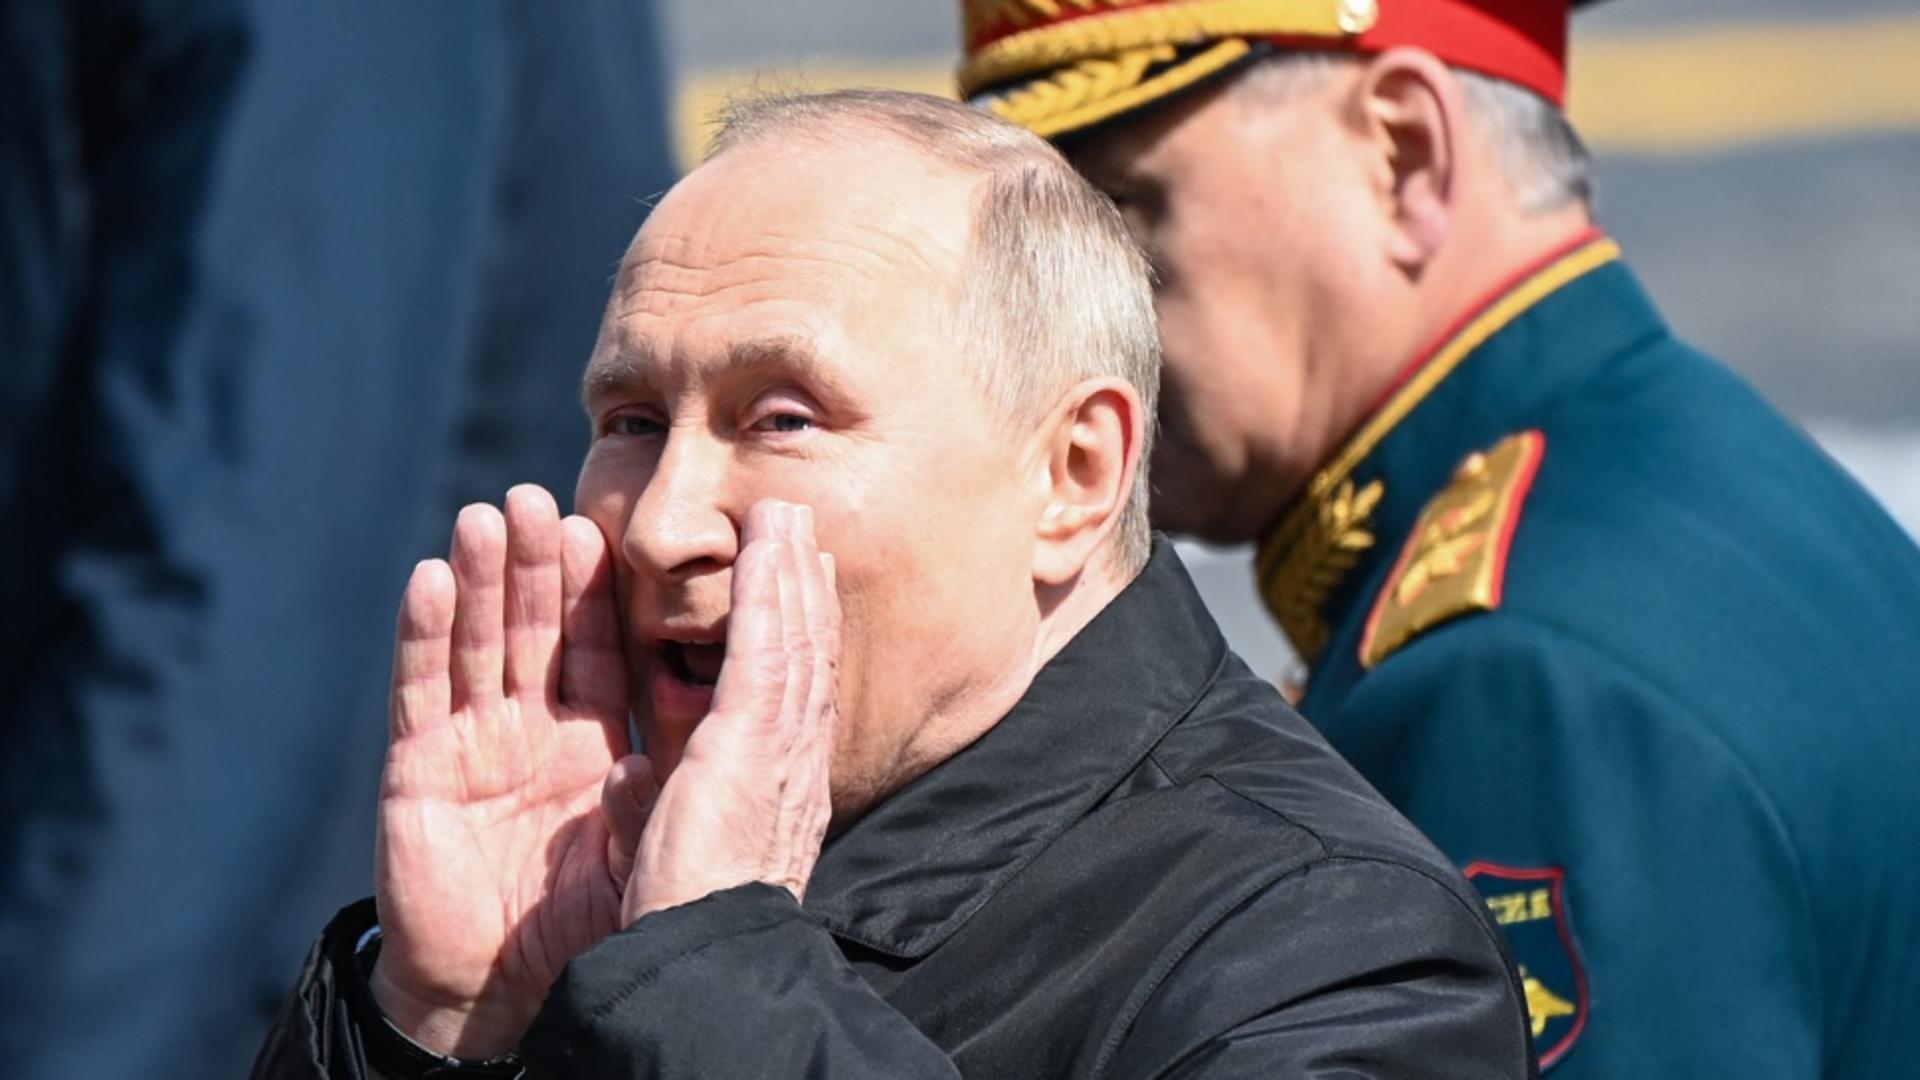 Val de ironii pe internet la adresa lui Putin. Modul stângaci în care umblă cu mouse-ul de la calculator VIDEO